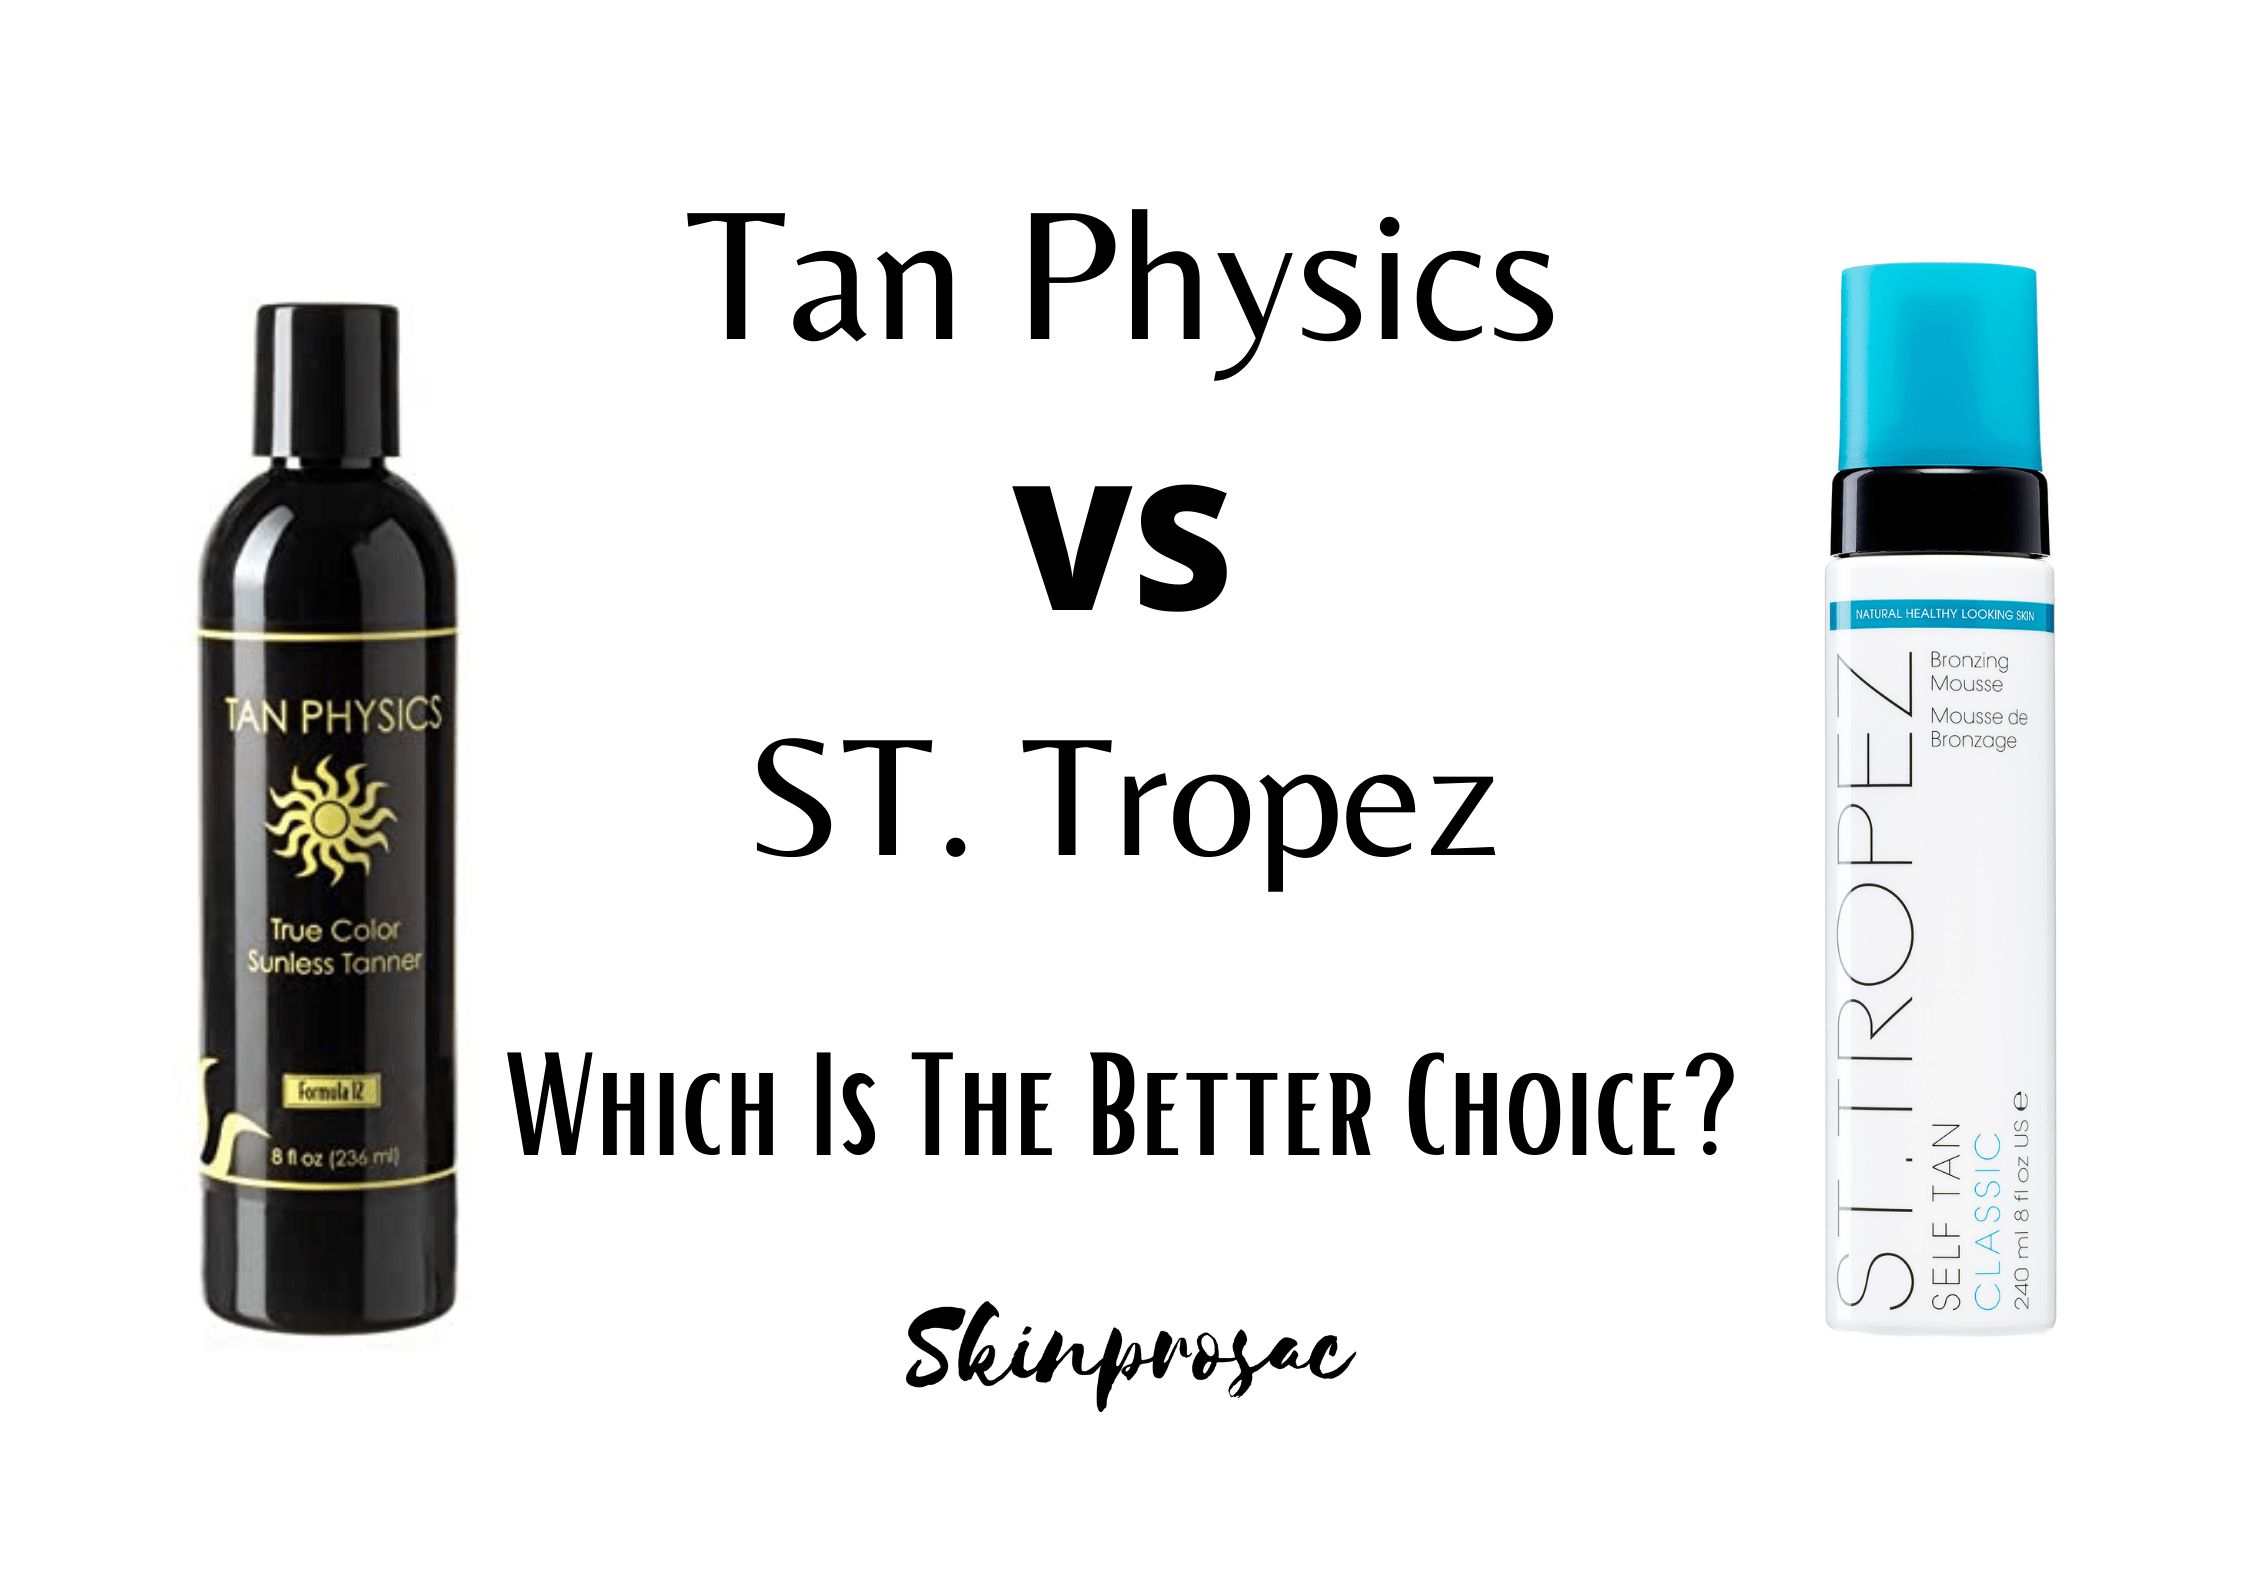 Tan Physics VS St Tropez